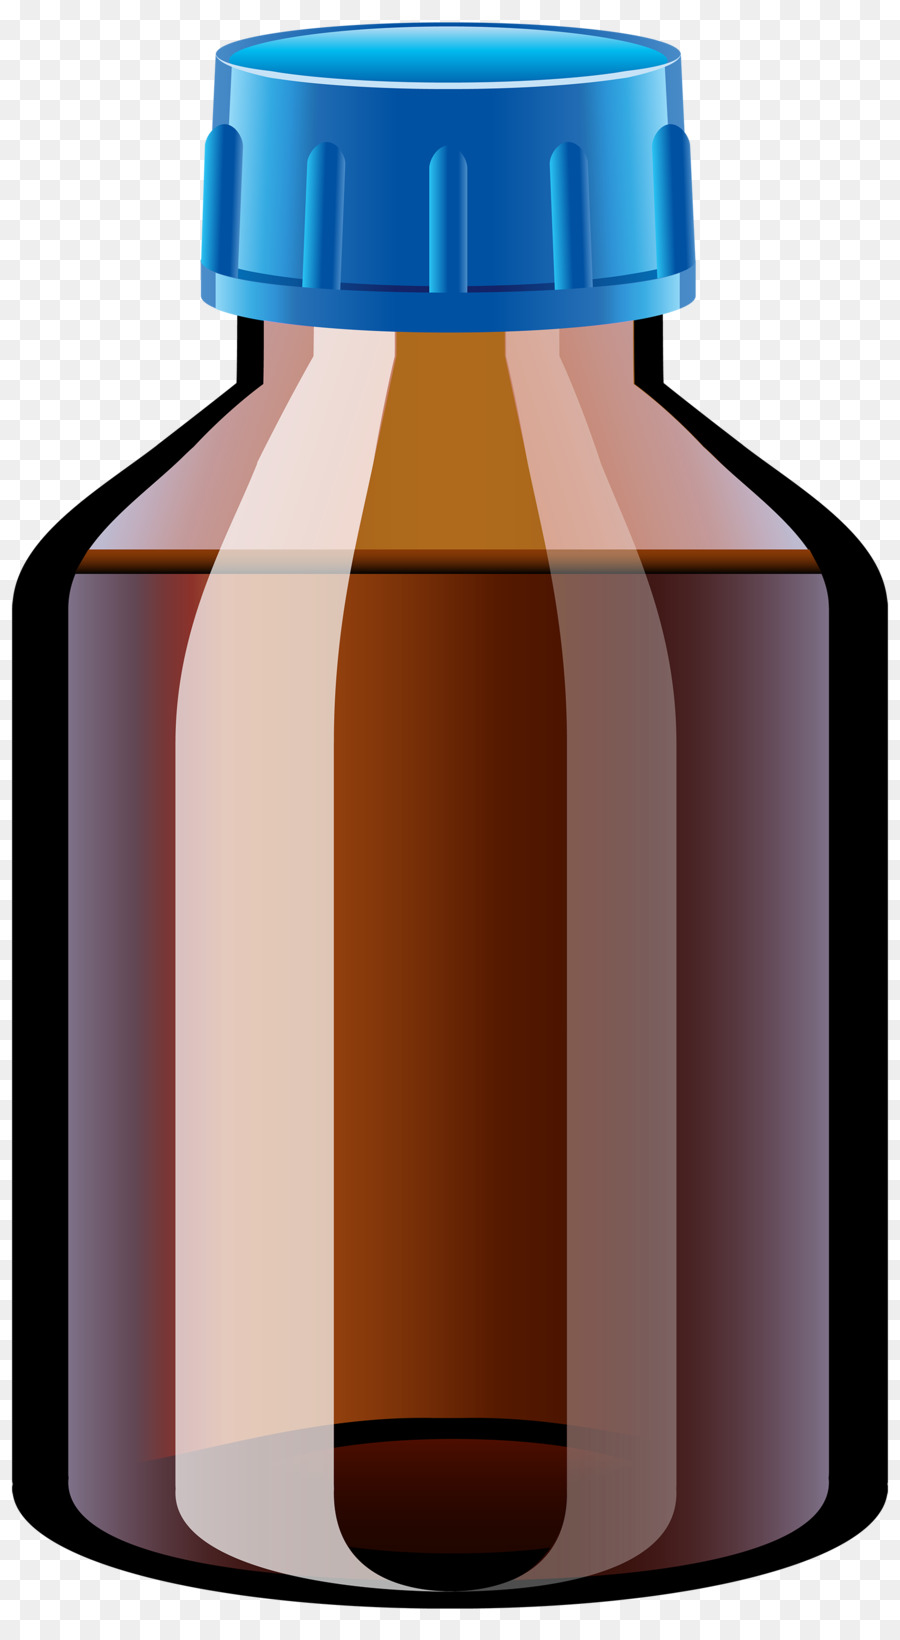 Pharmaceutical drug Tablet Bottle Clip art - bottle png download - 1655*3000 - Free Transparent Pharmaceutical Drug png Download.